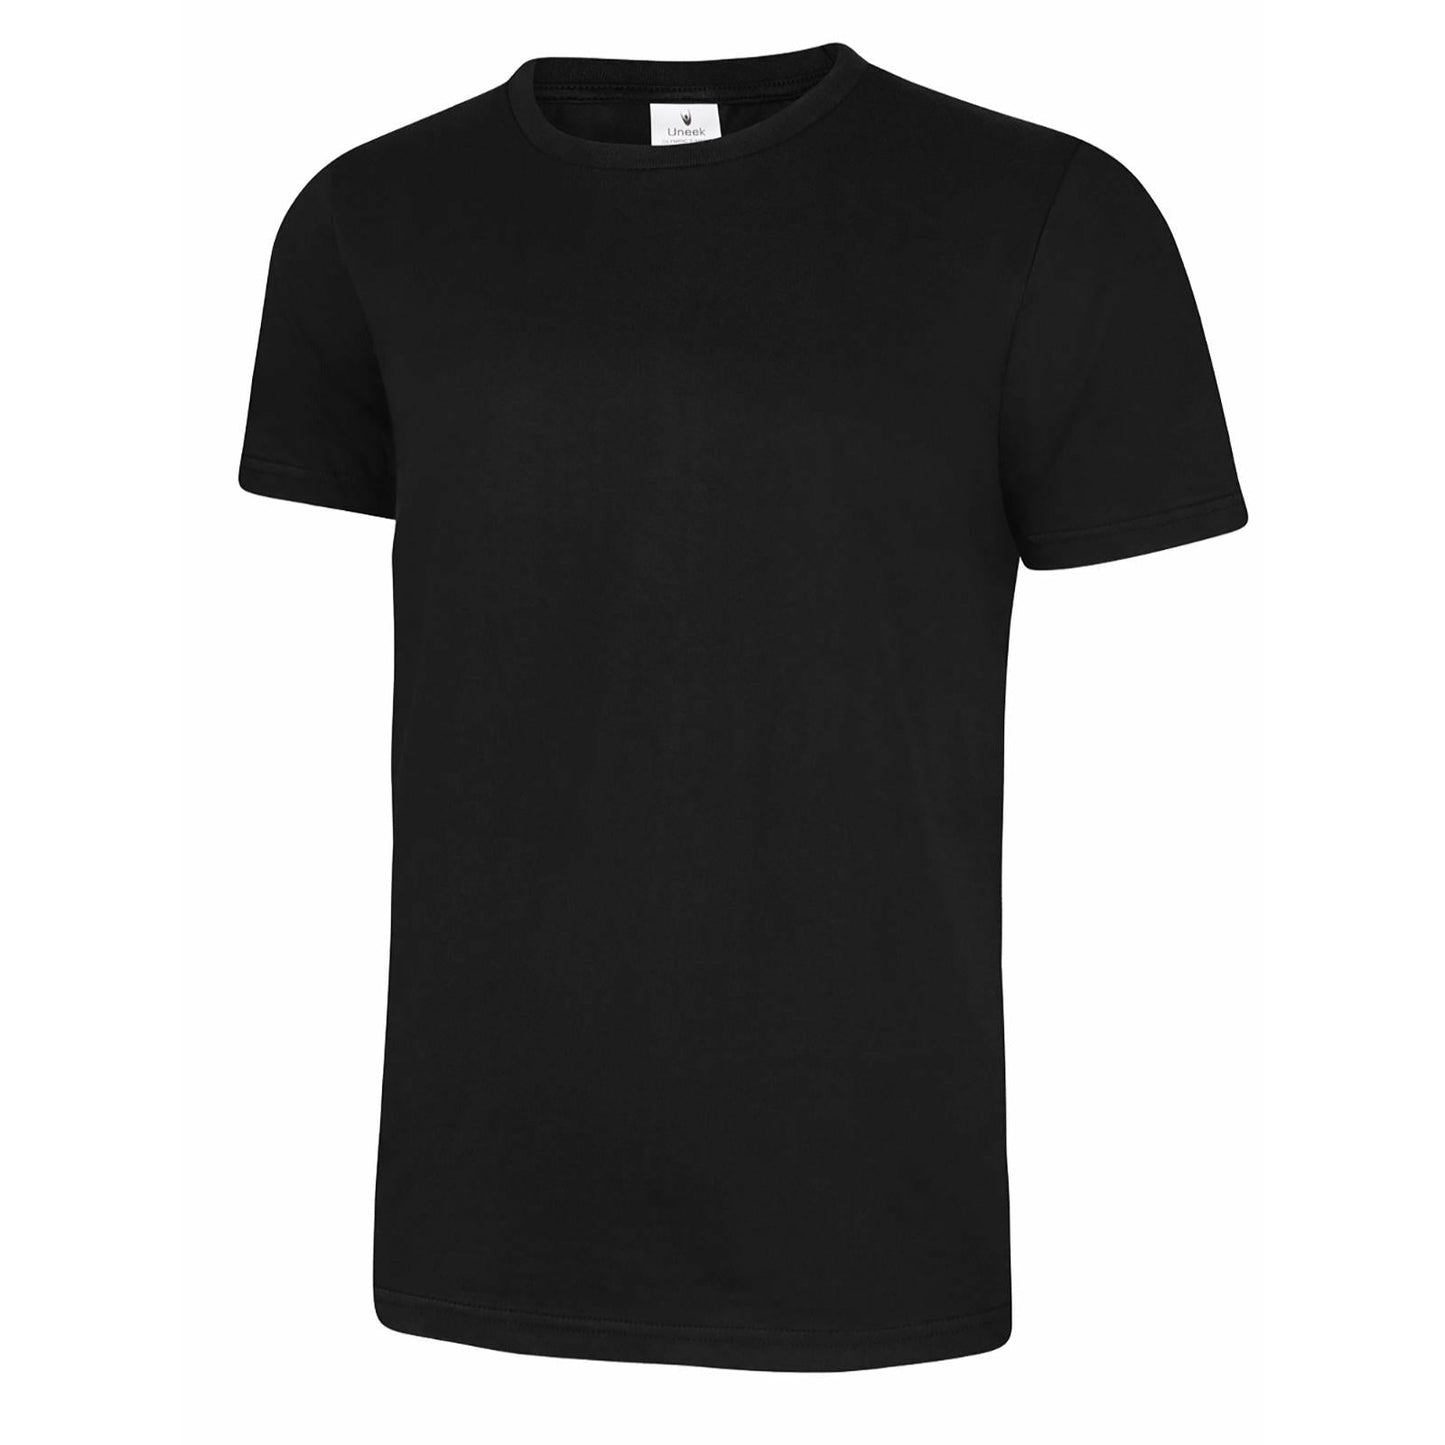 Olympic T-shirt - Black